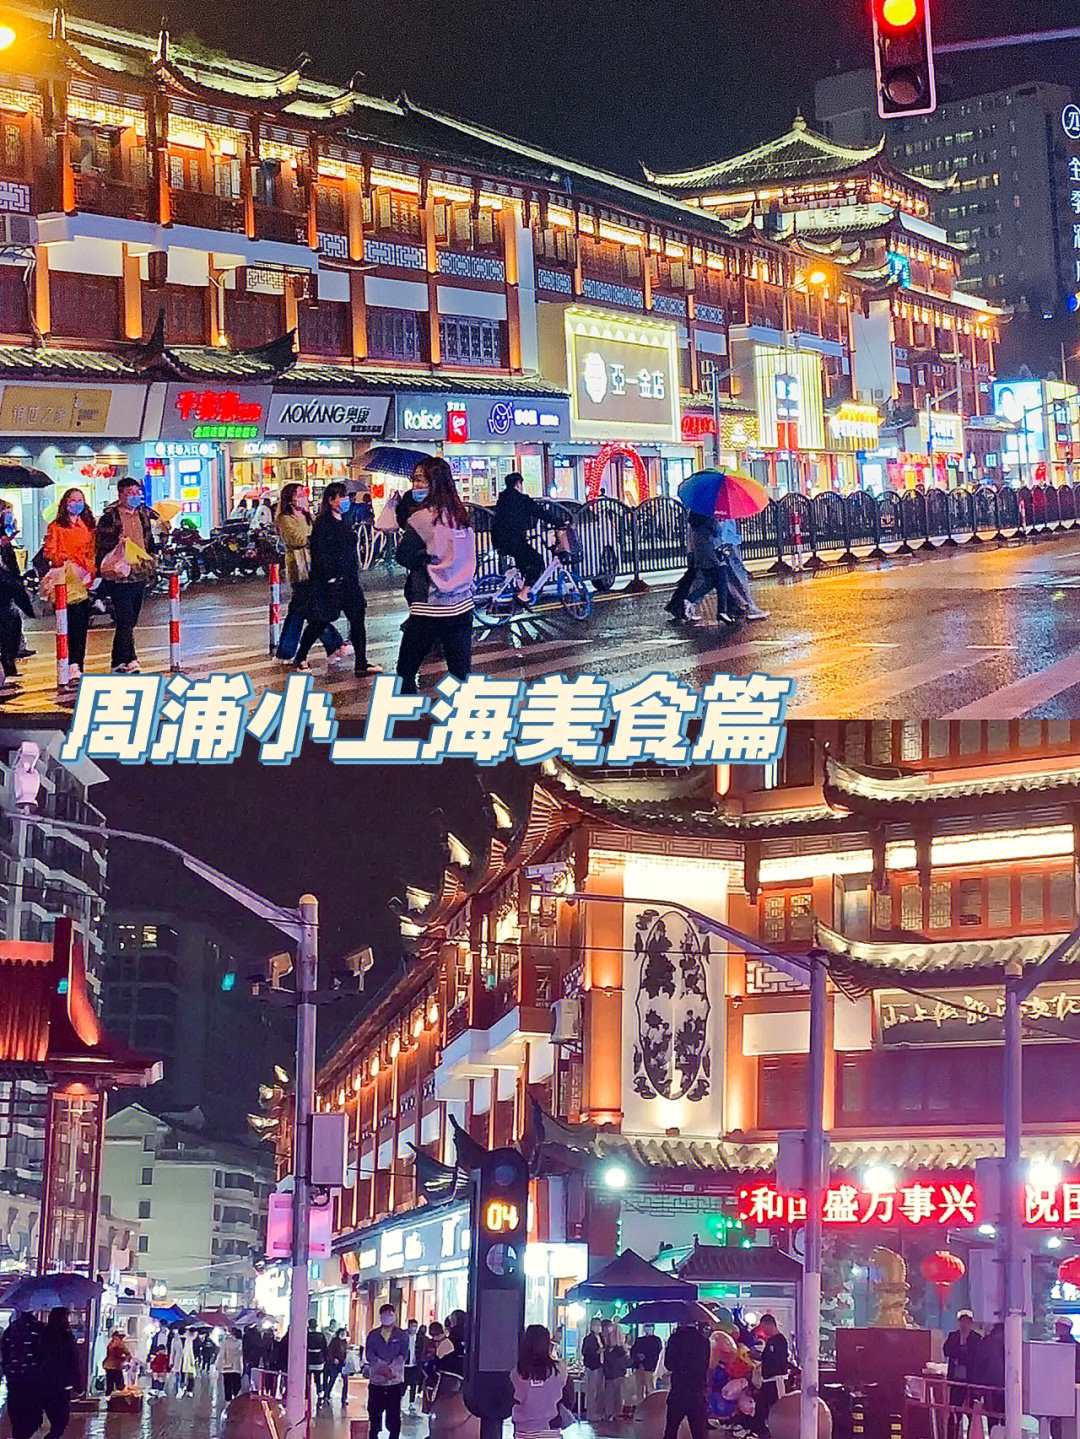 周浦小上海步行街地点99上海浦东新区康沈公路营业时间:下午5点到